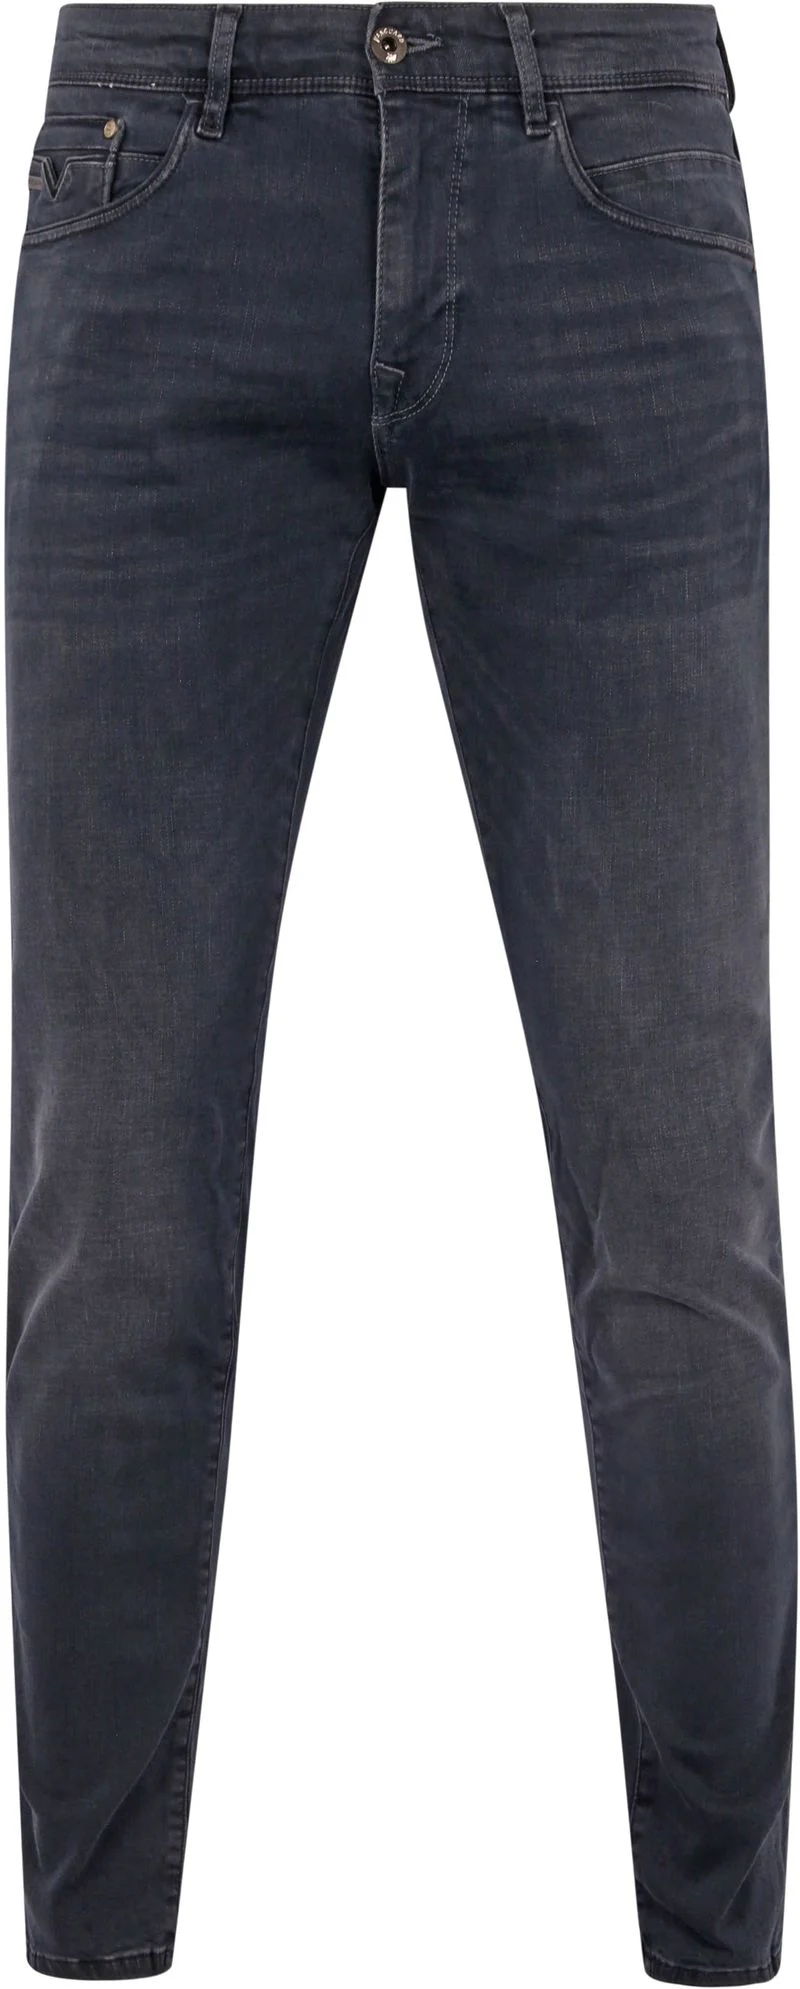 Vanguard Jeans V12 Rider Anthrazit ODB - Größe W 32 - L 32 günstig online kaufen